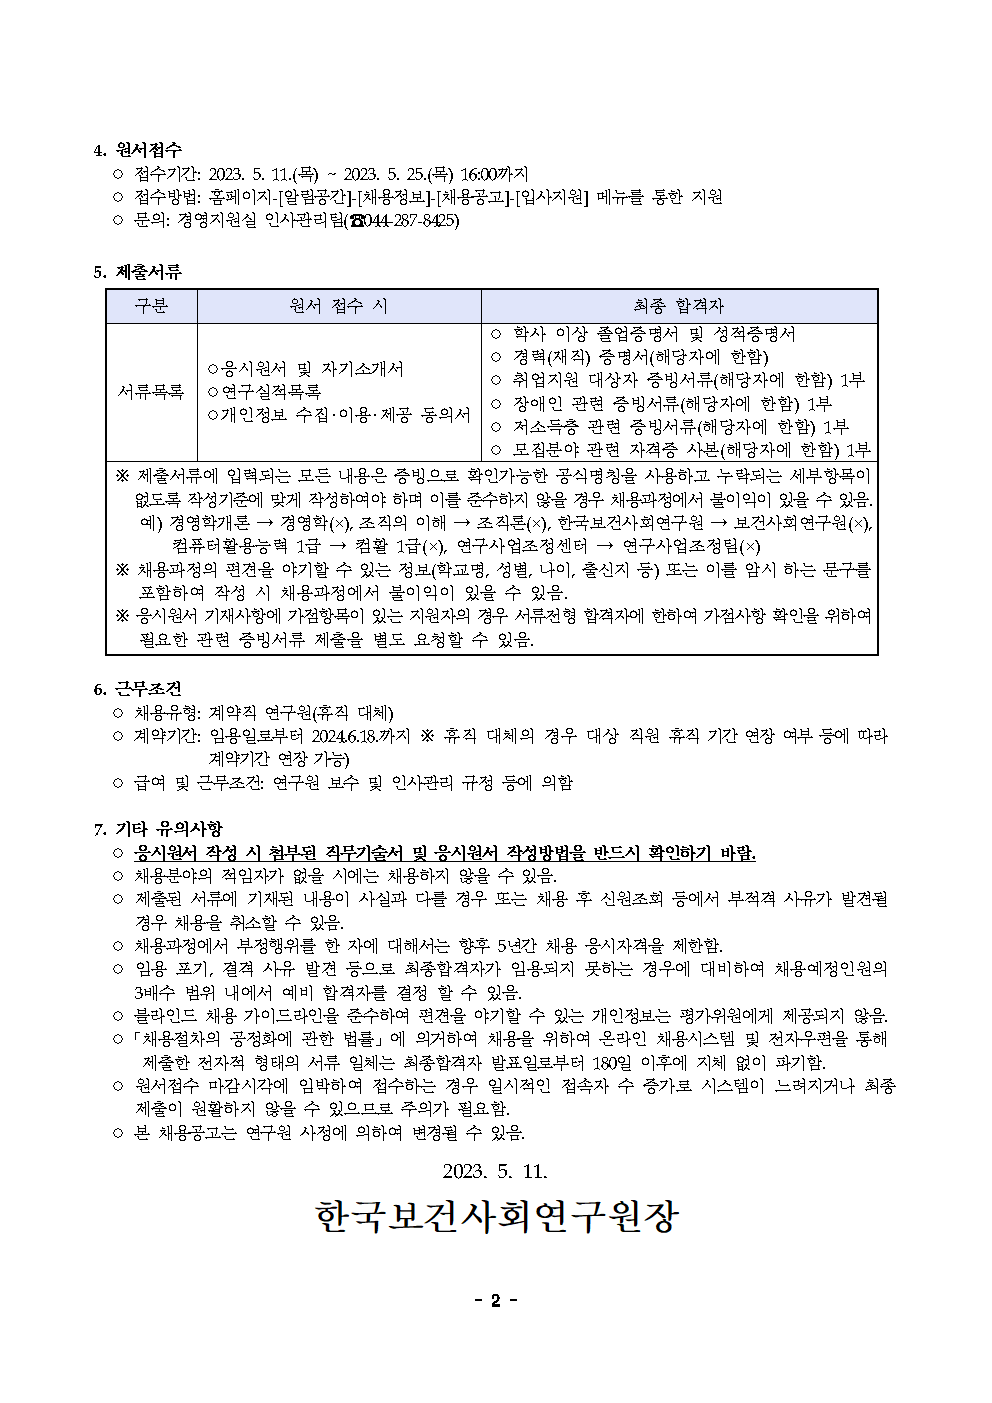 (2/2) 한국보건사회연구원 계약직 연구원 채용 공고(사회보장재정데이터연구실) - 자세한 내용은 하단 참조